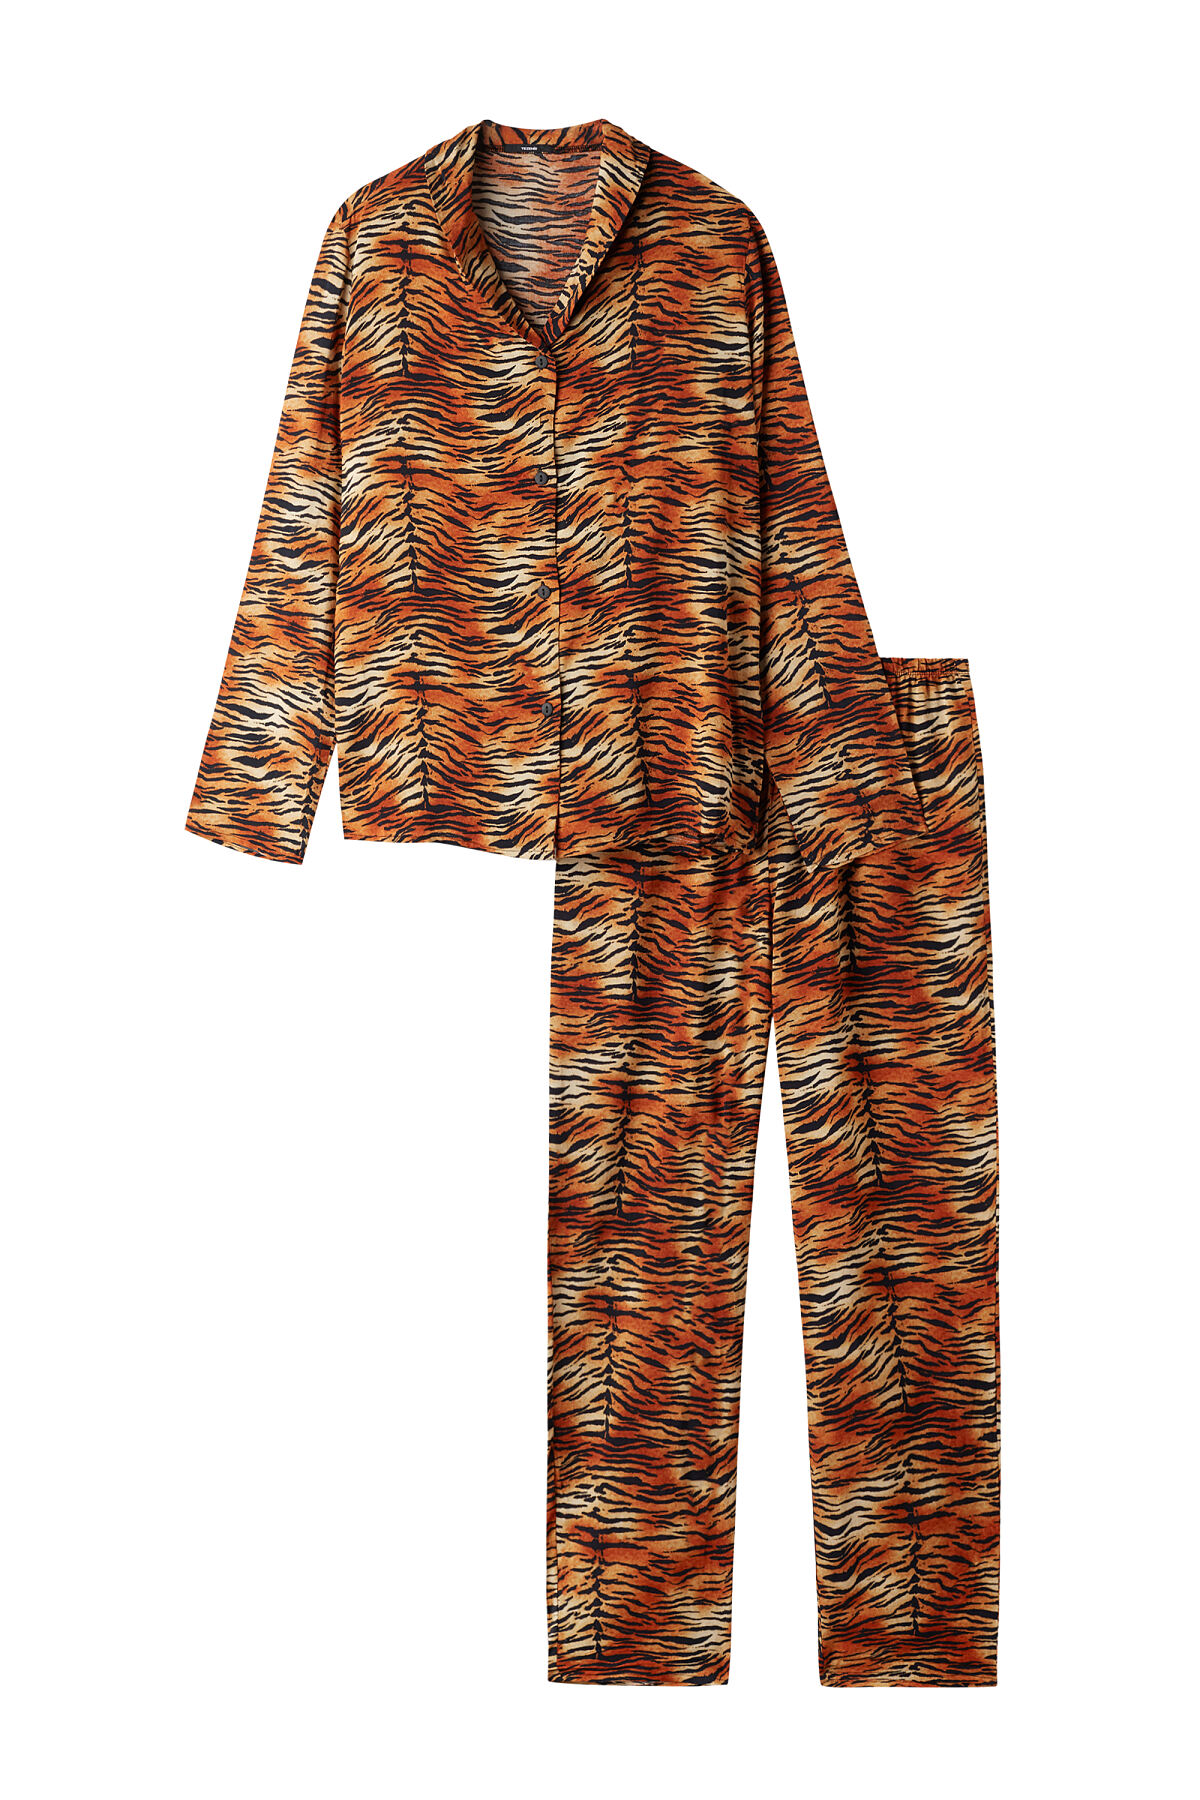 TEZ_Pyjamaset aus Viskose_Tiger_EUR 25,99 (1)